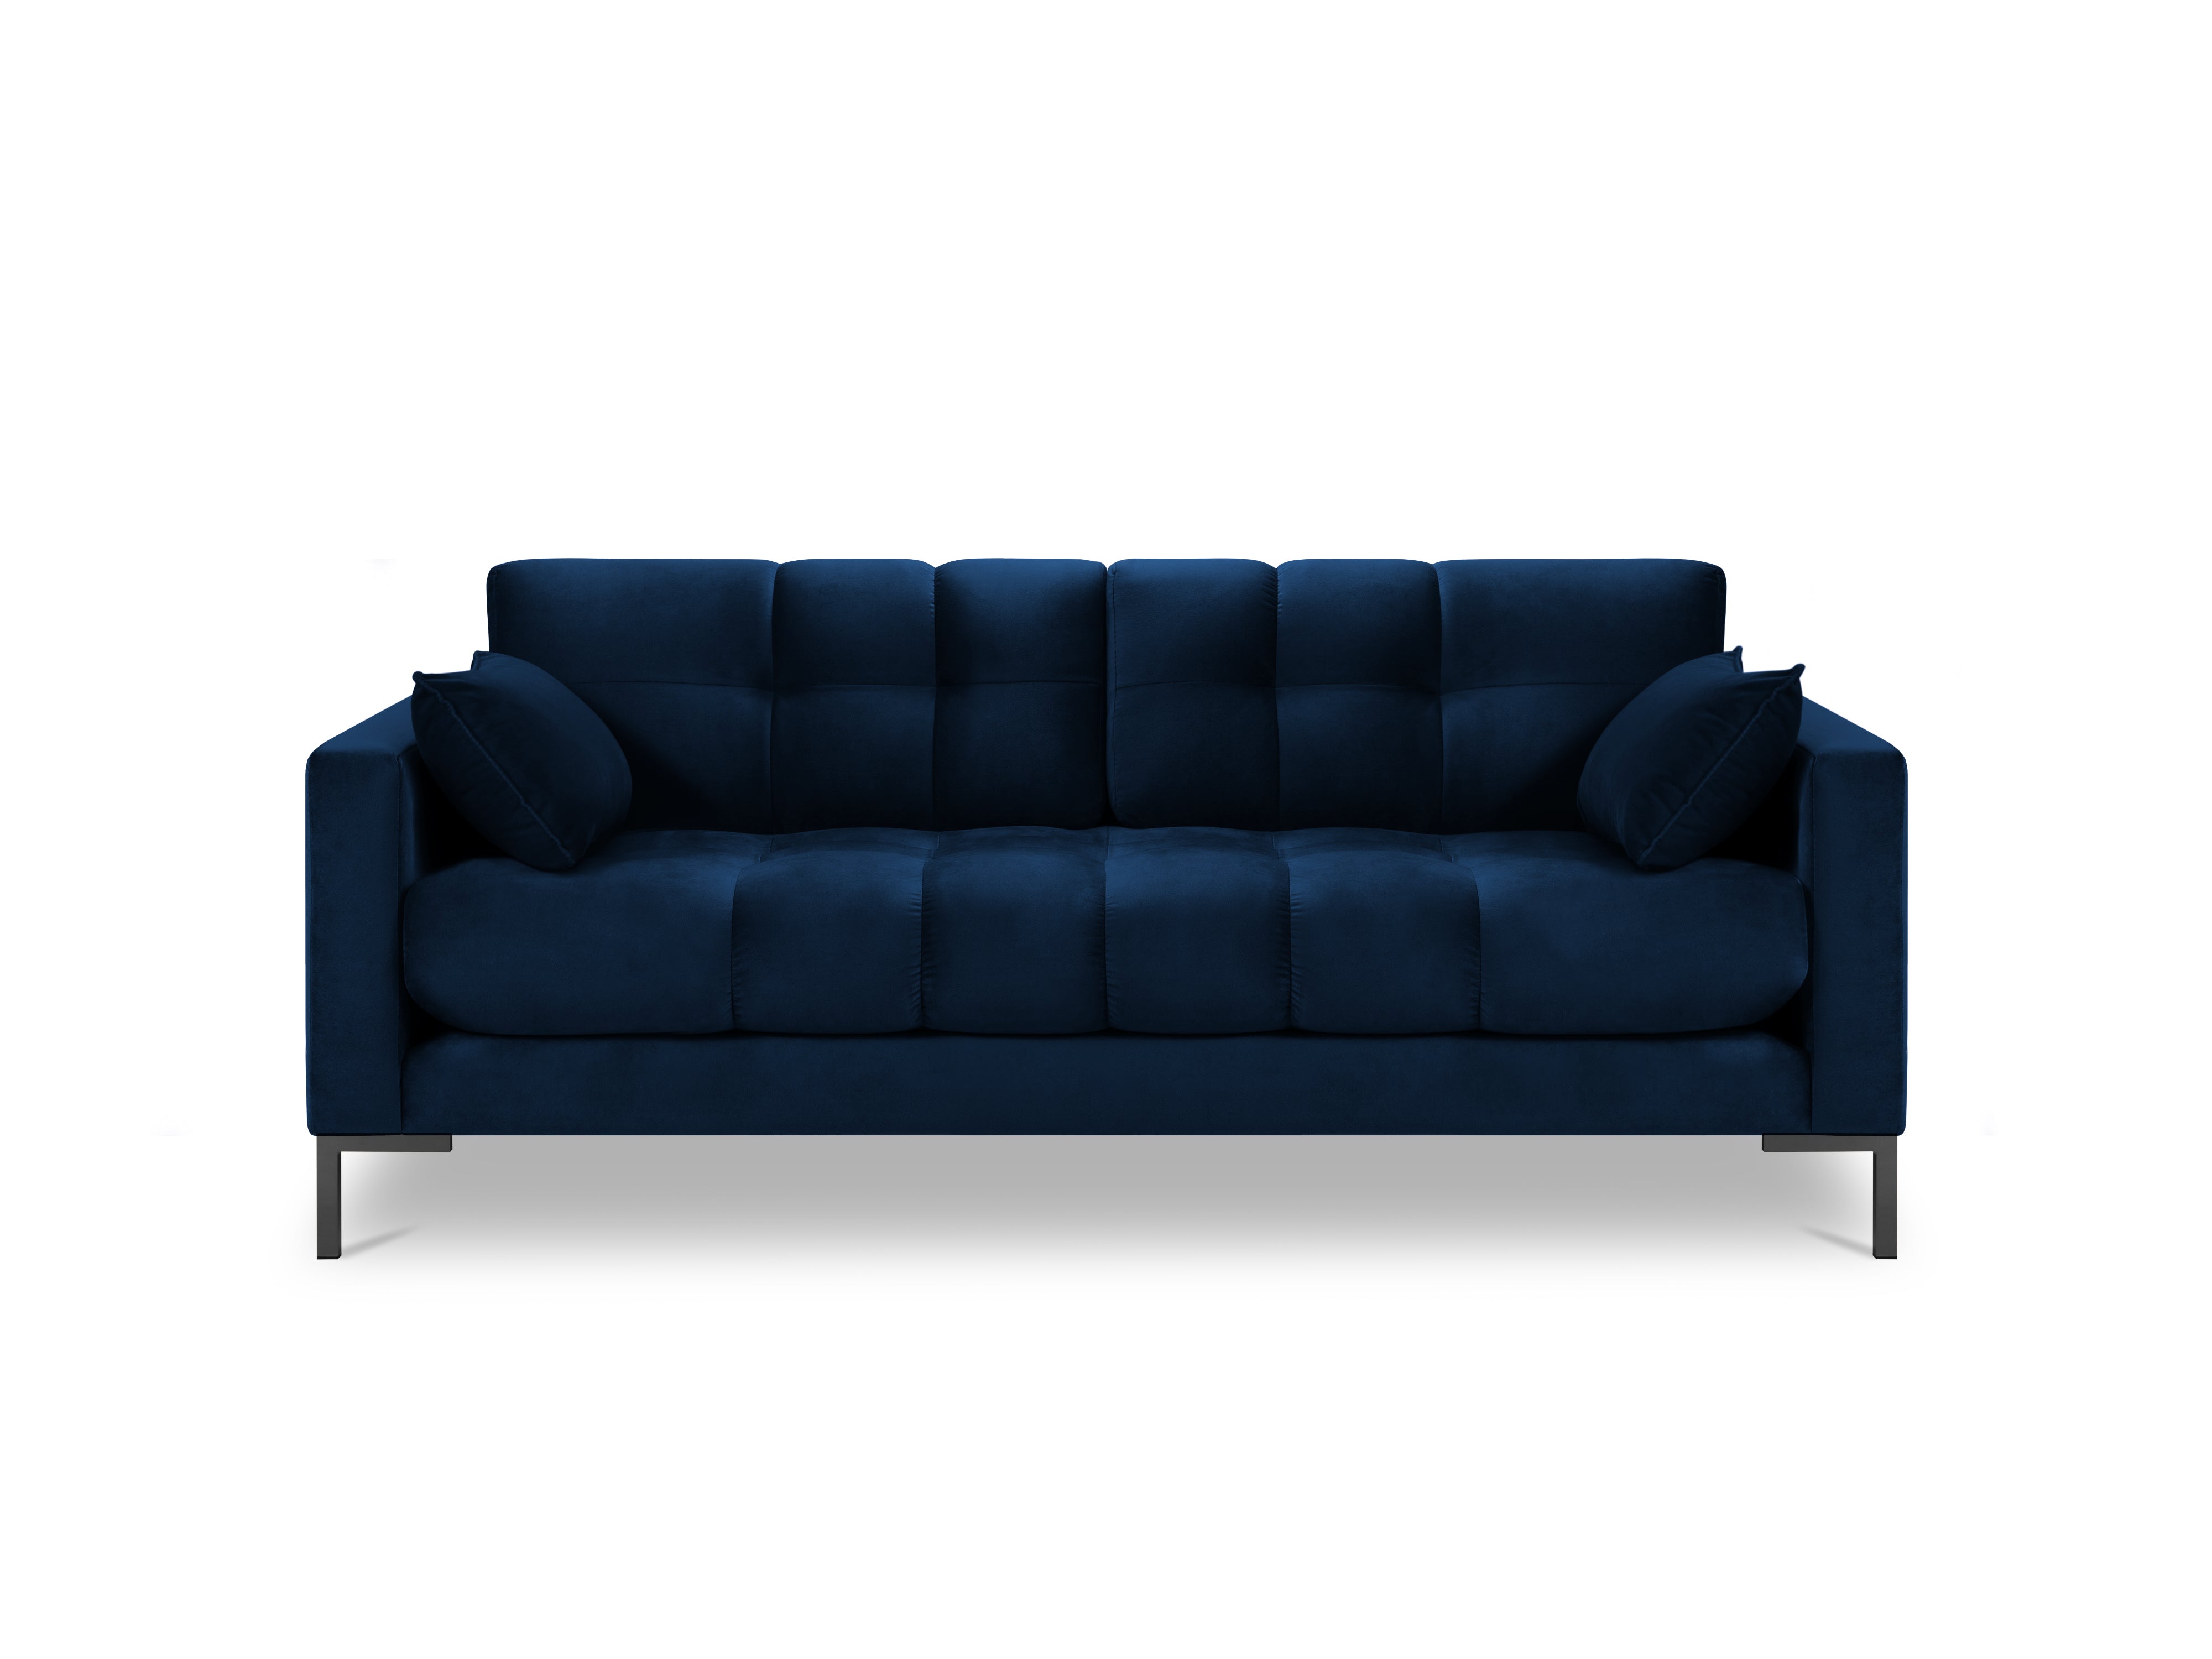 3-seater blue sofa